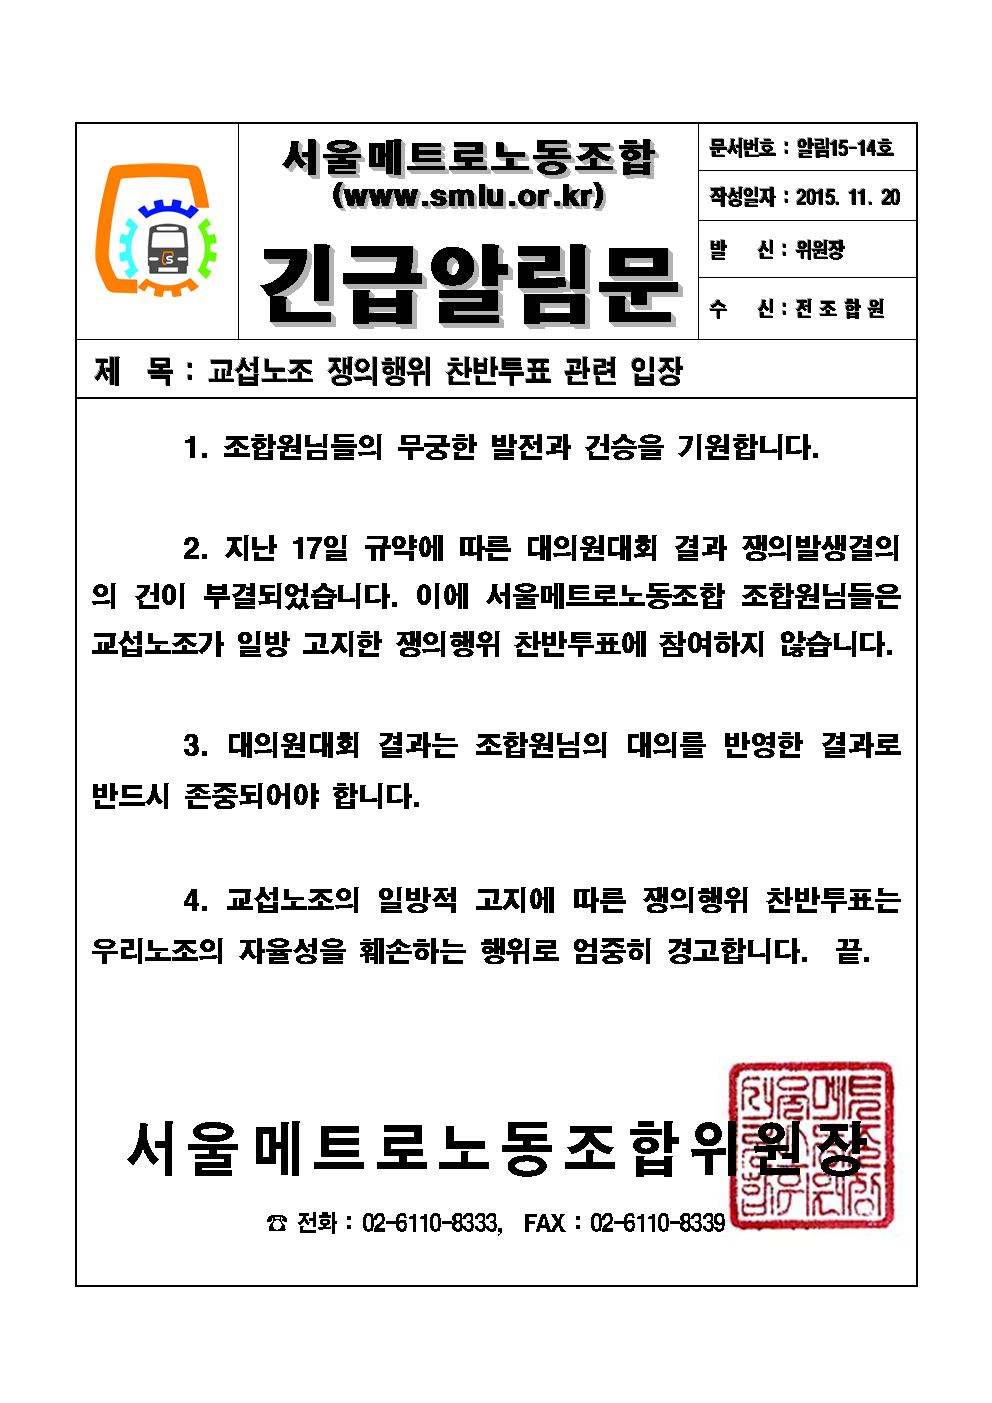 15-14호 교섭노조 쟁의행위 입장 통보001.jpg